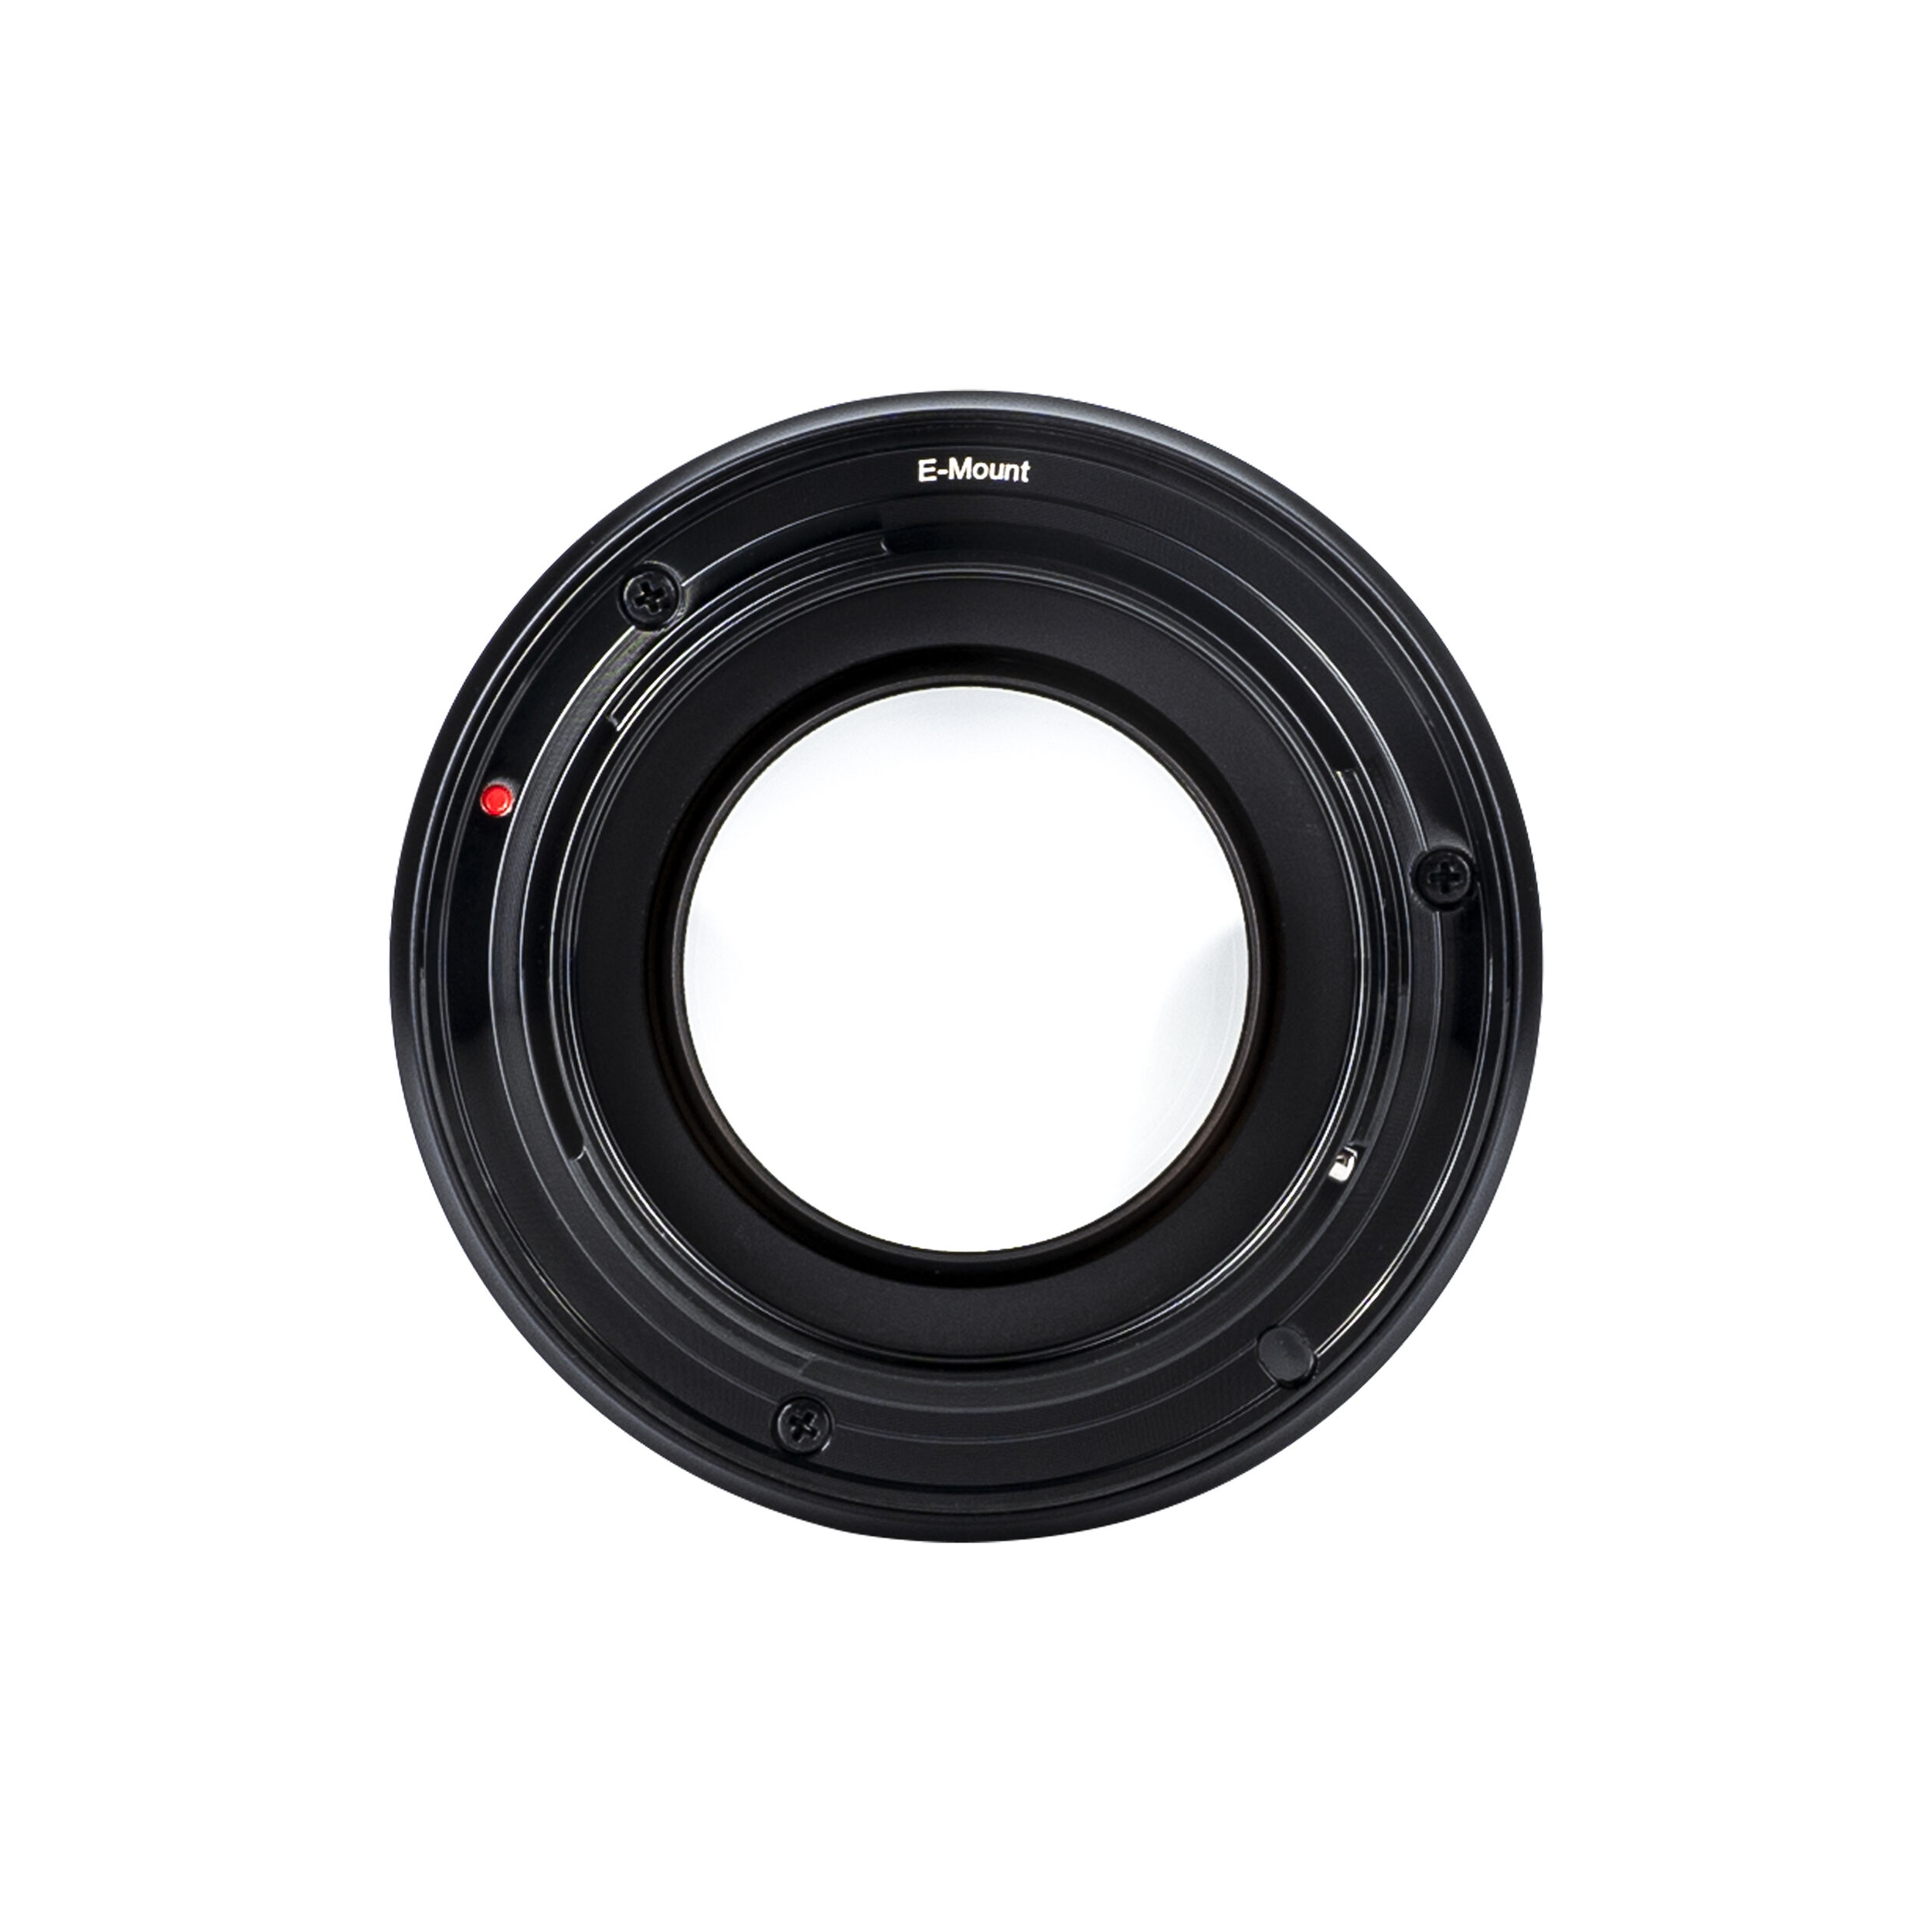 7artisans Photoelectric 25mm f/0.95 Lens for Sony E Mount